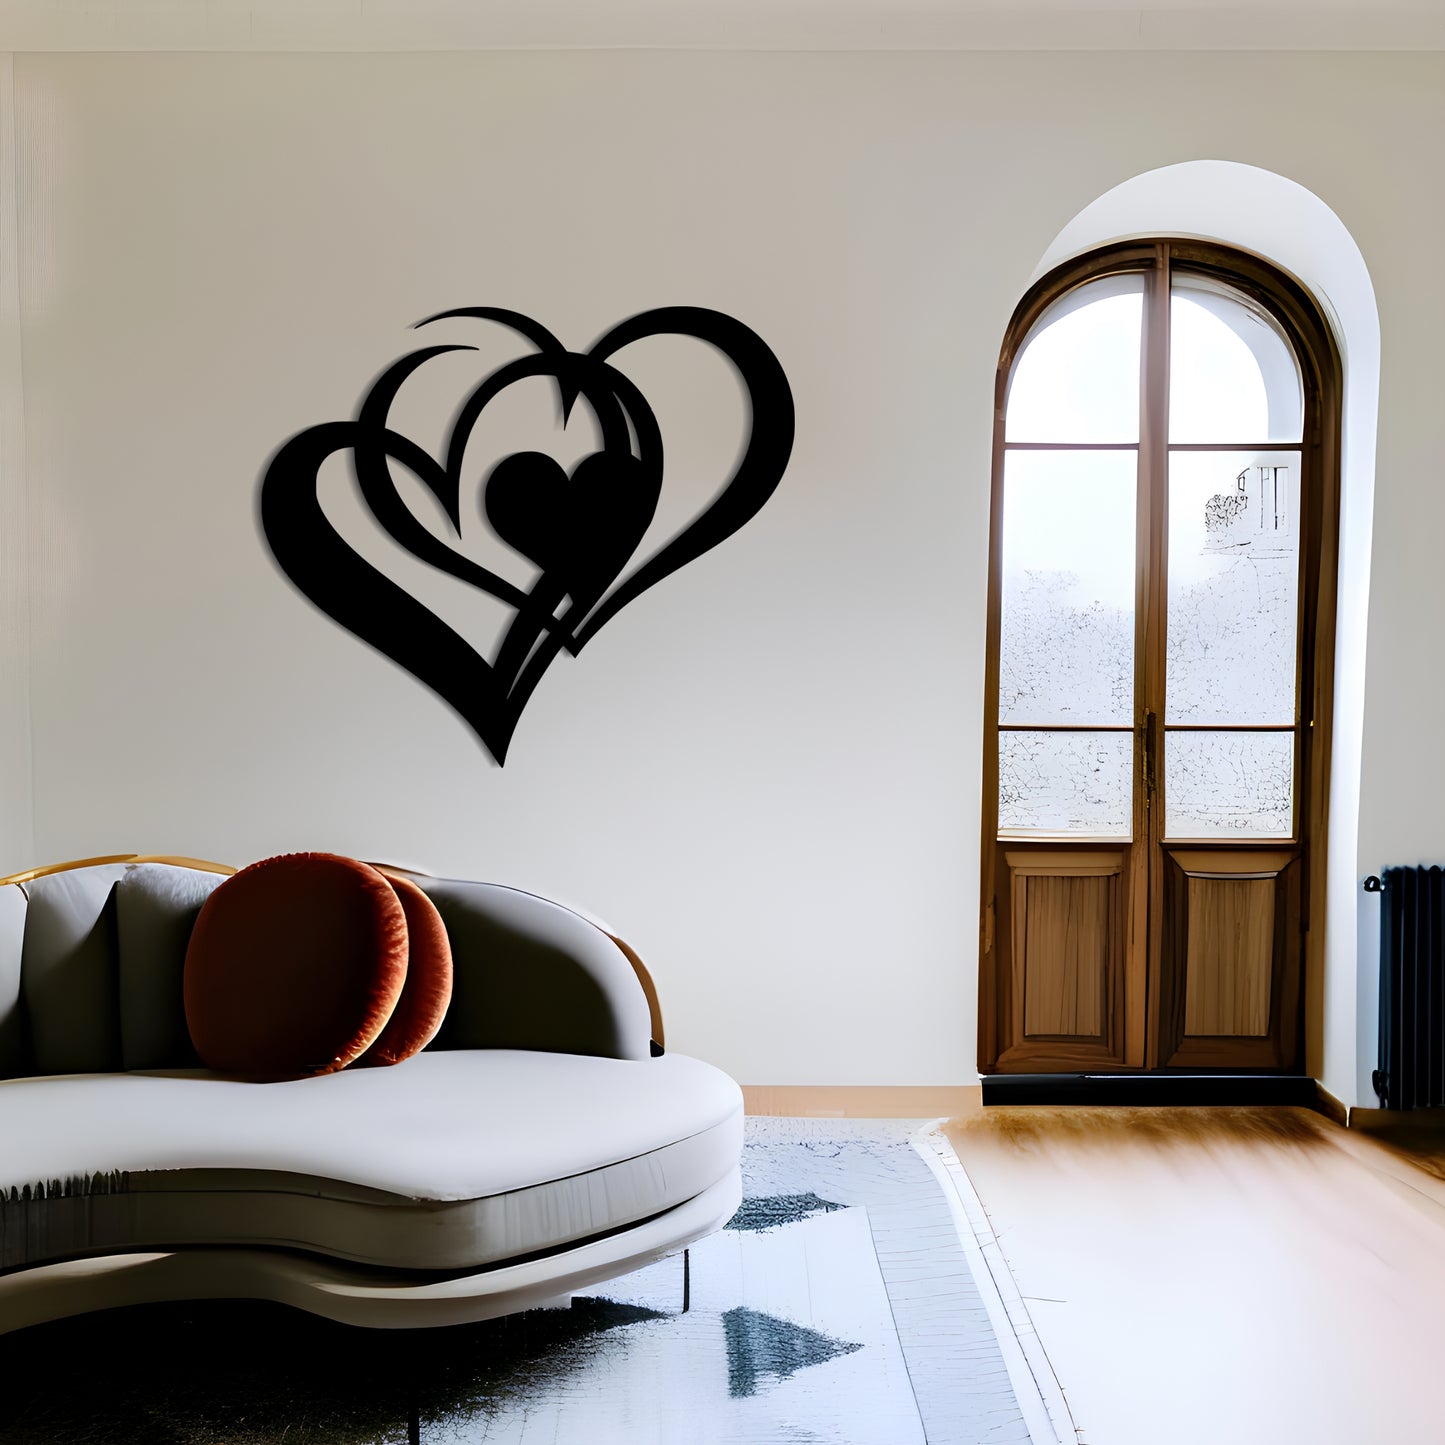 Elegant Metal Wall Art of Two Hearts in Flat Shape